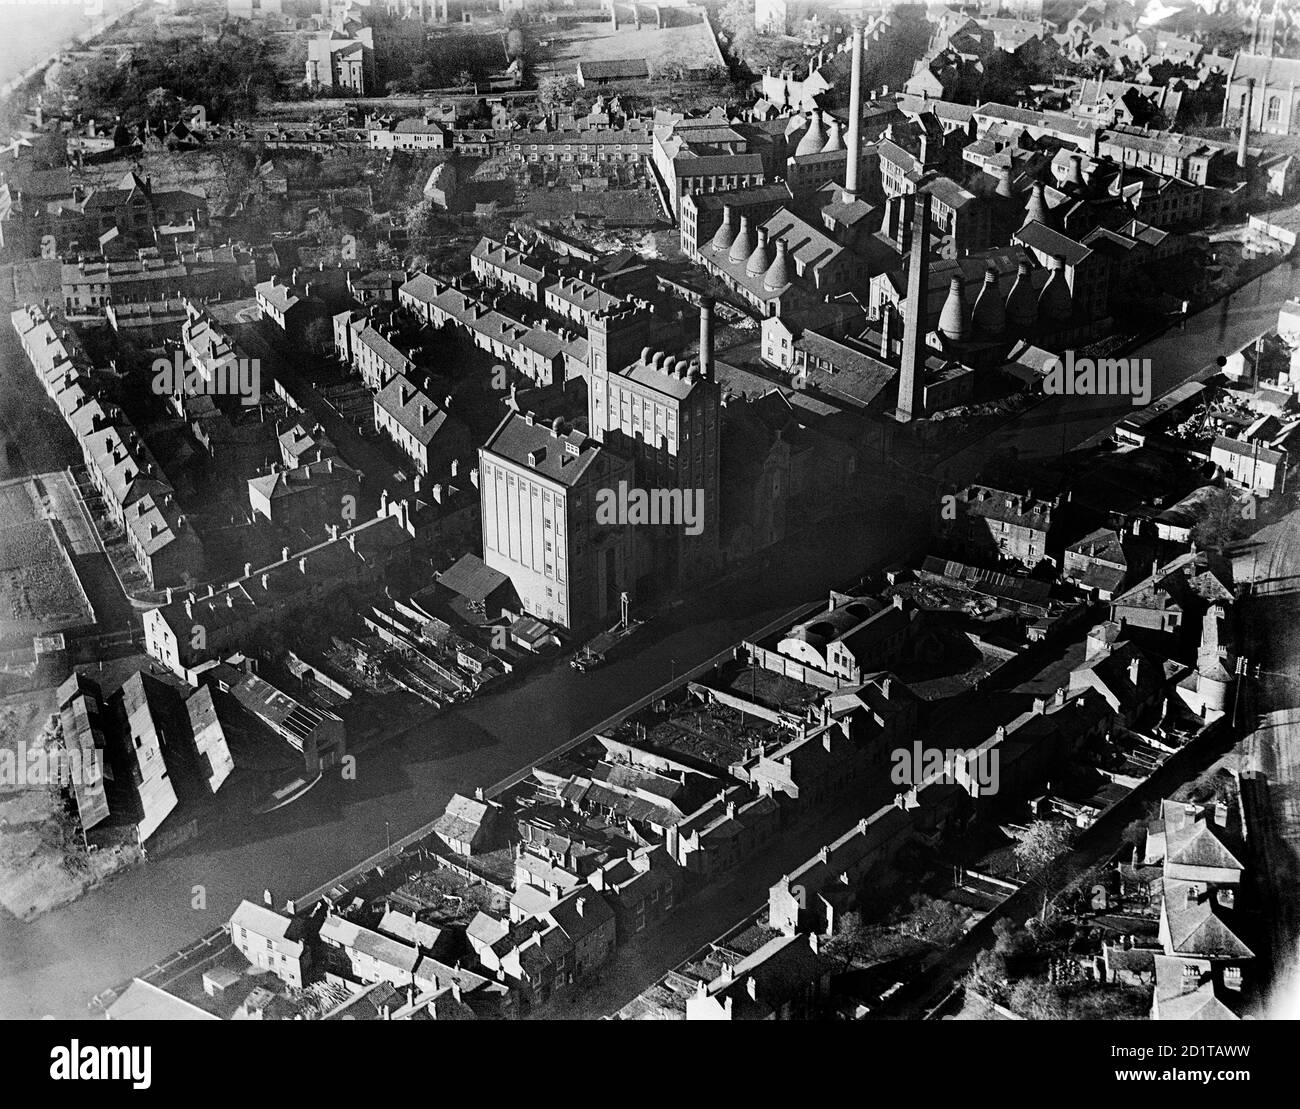 WORCESTER. Luftaufnahme der Diglis Gegend von Worcester, neben dem Worcester und Birmingham Canal. Die Fabriken und Öfen auf der Portland Street und Mill Street wurden mit den Porzellanarbeiten verbunden. Fotografiert im März 1921. Aerofilms Collection (siehe Links). Stockfoto